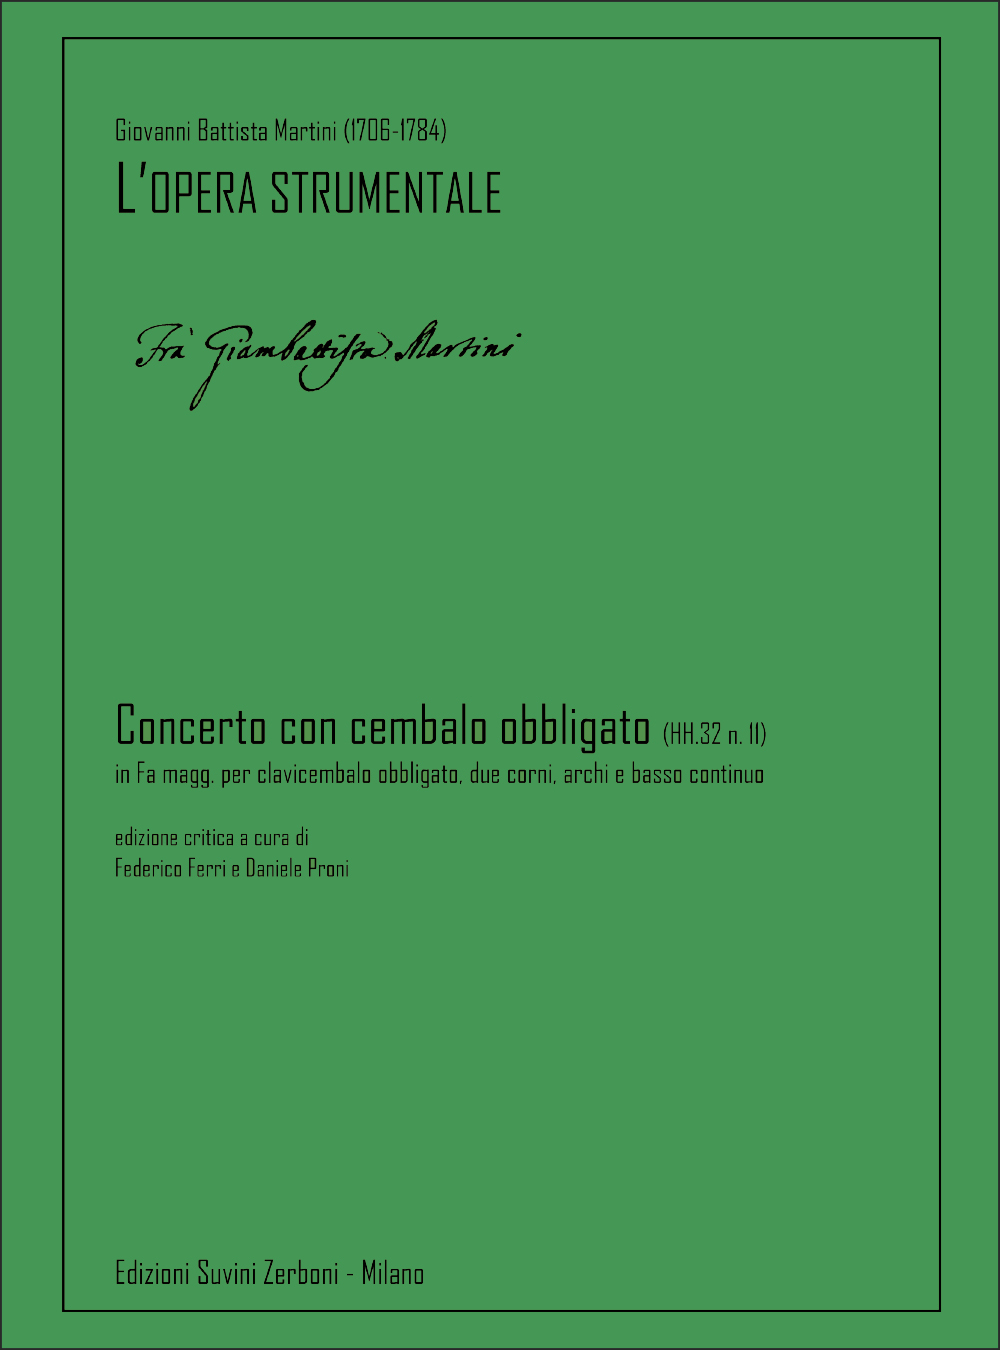 Giovanni Battista Martini: Concerto con cembalo obbligato (HH.32 n. 11):